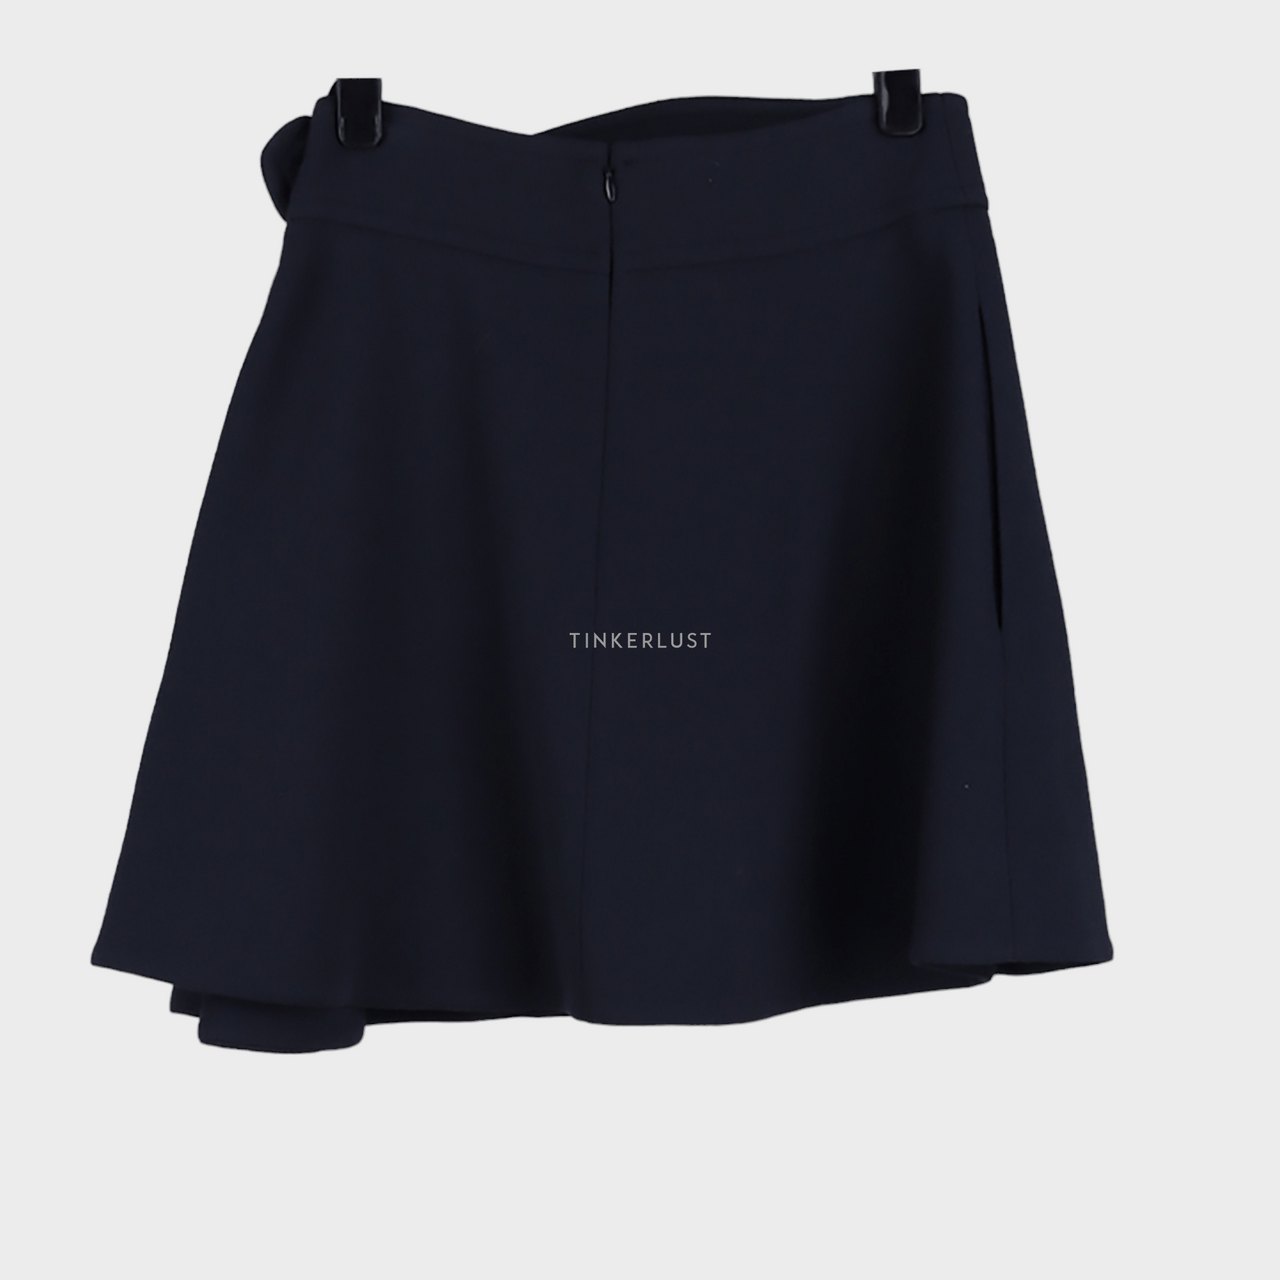 Carven Dark Grey Mini Skirt